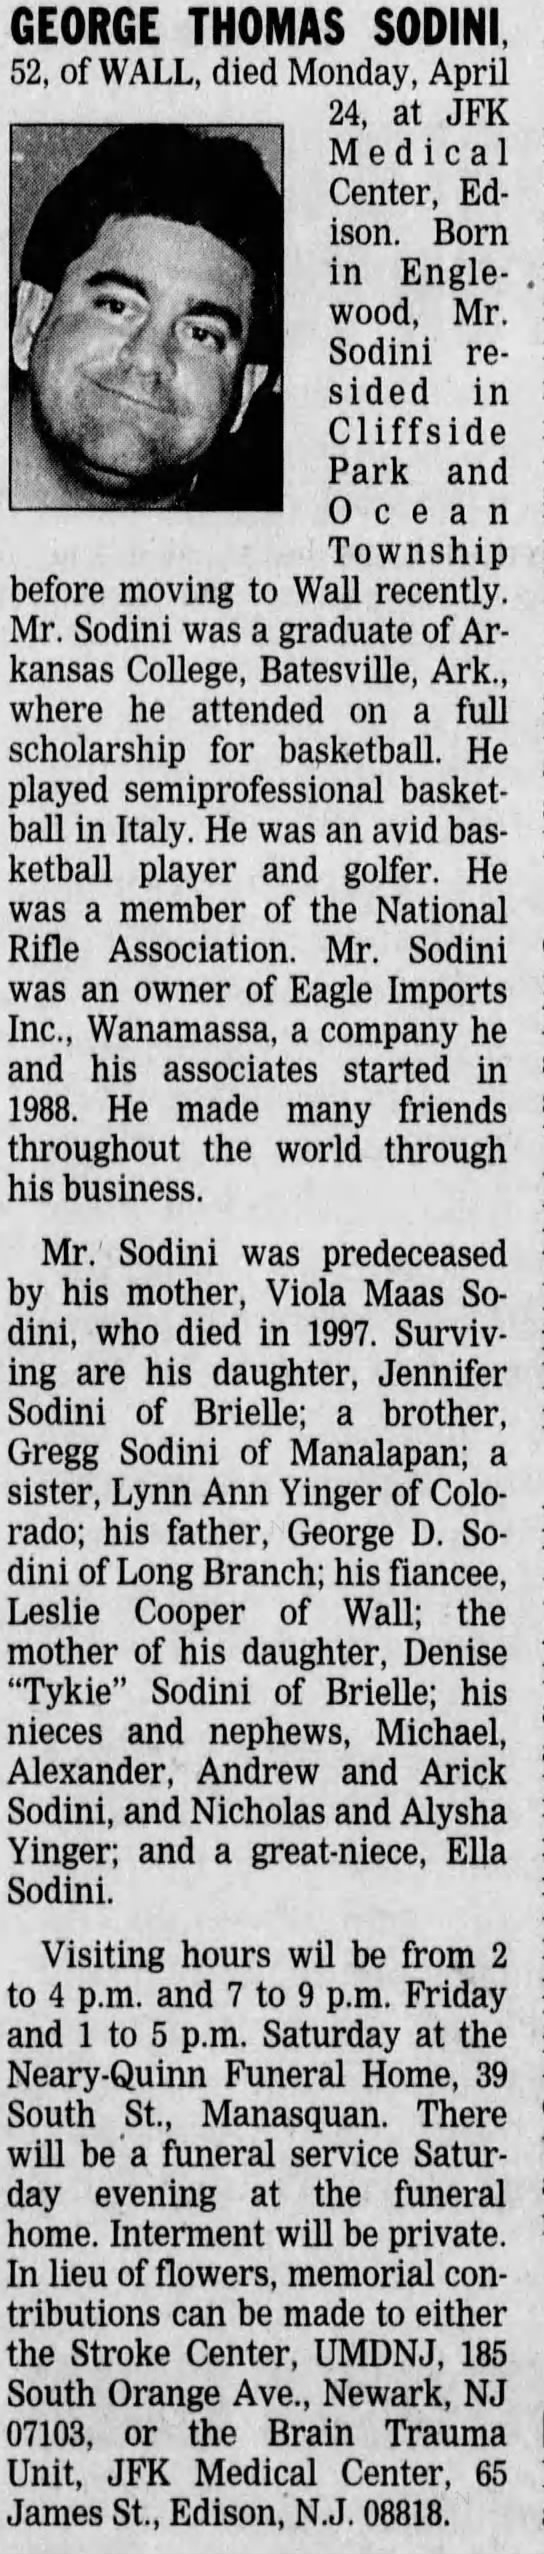 Obituary for GEORGE THOMAS SODINI (Aged 52) - Newspapers.com